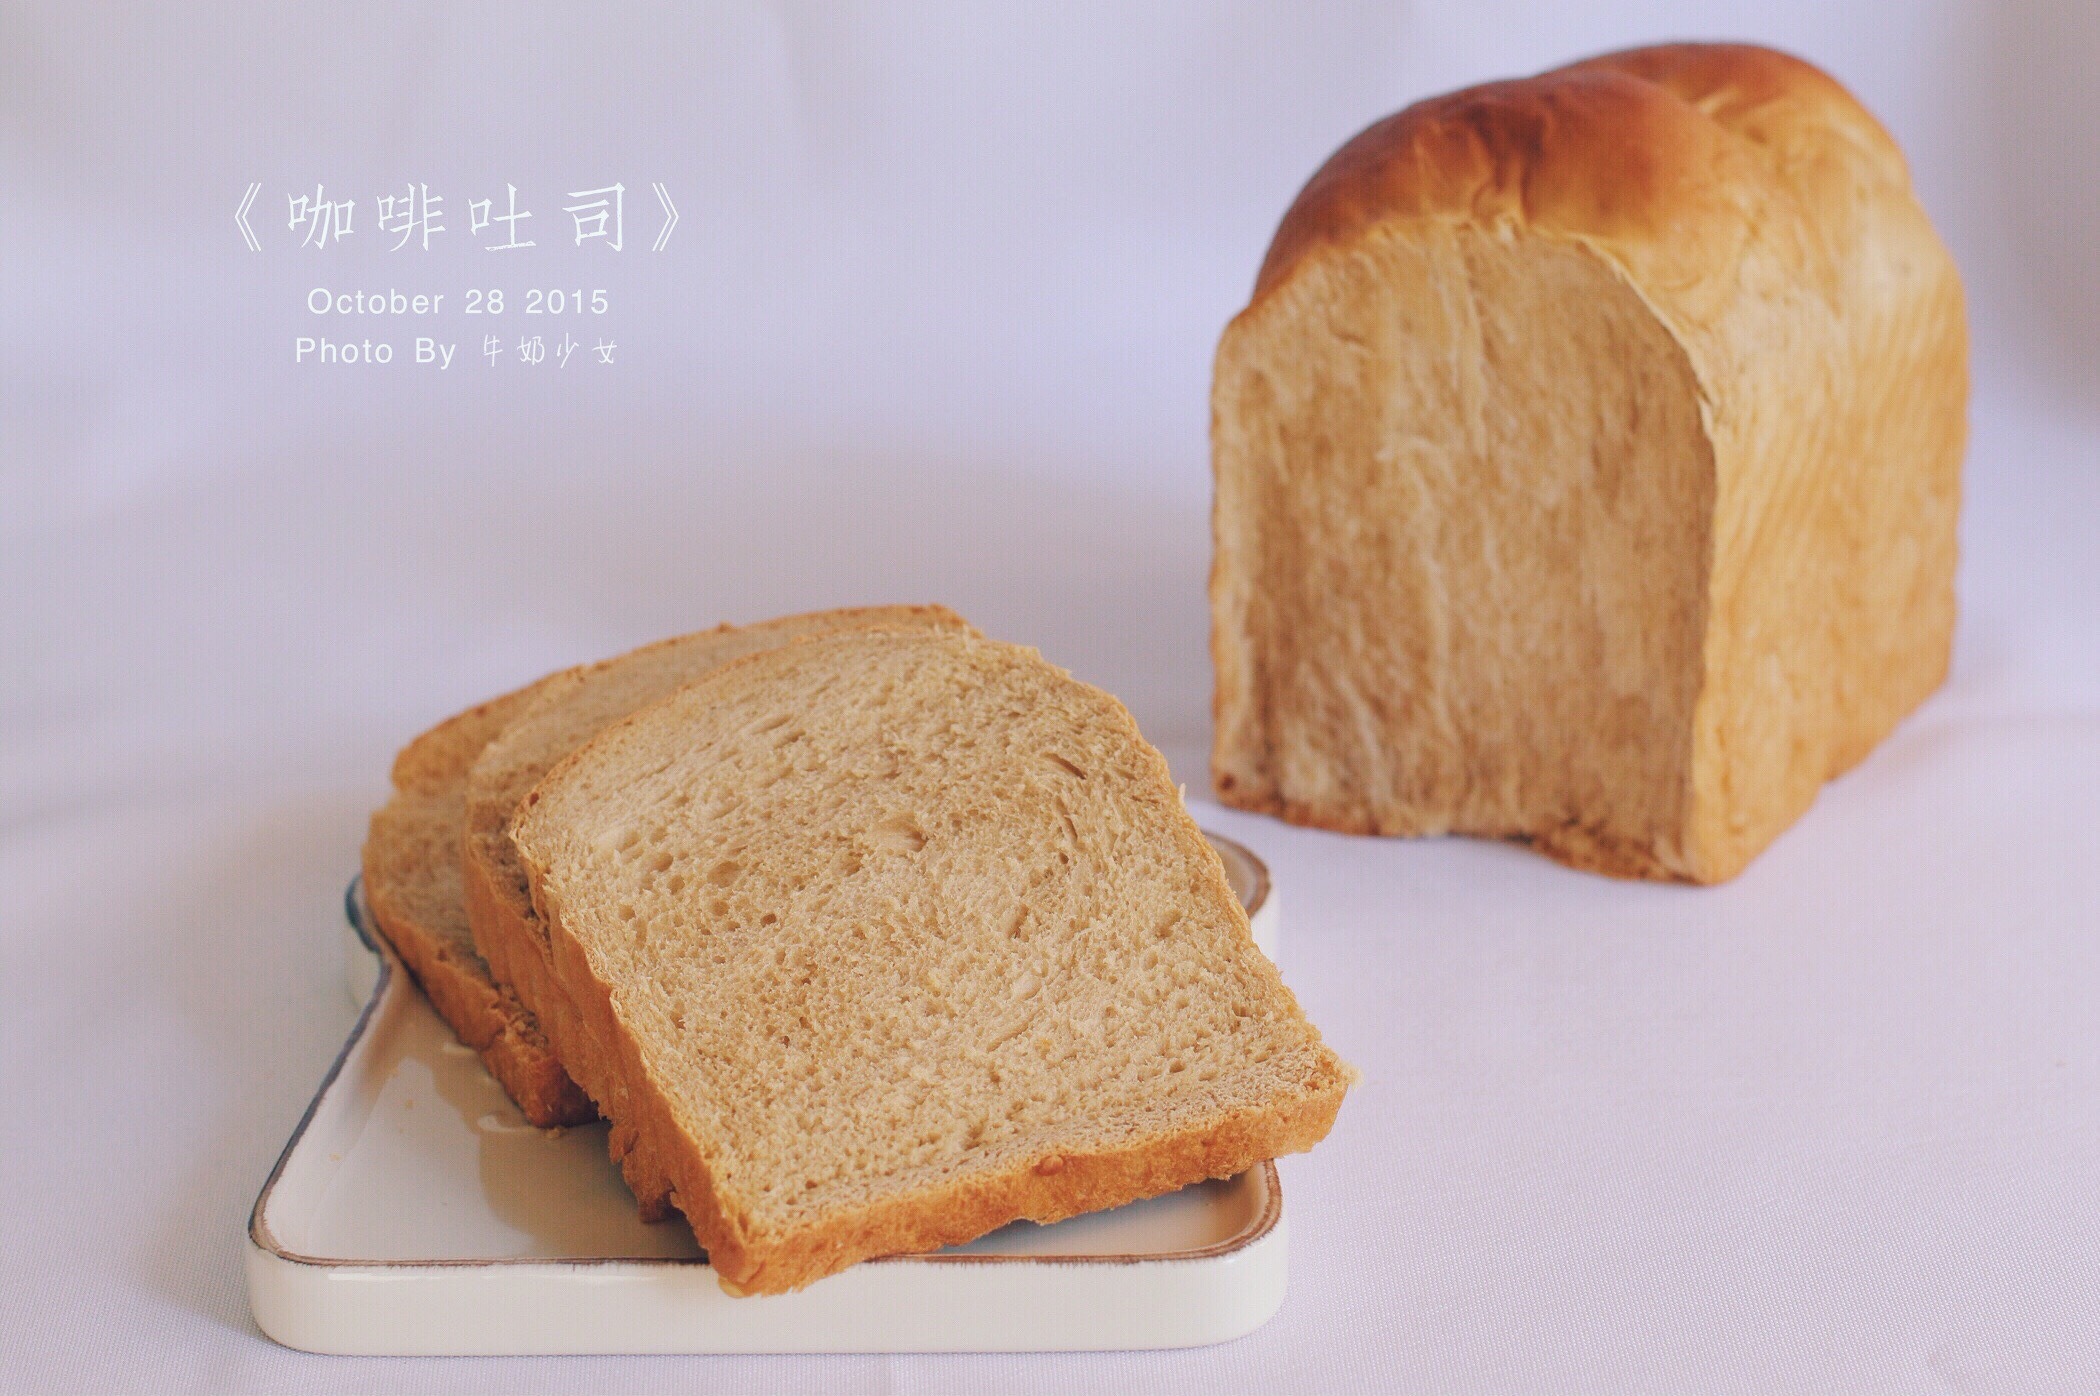 吐司面包 大块头面包的封面